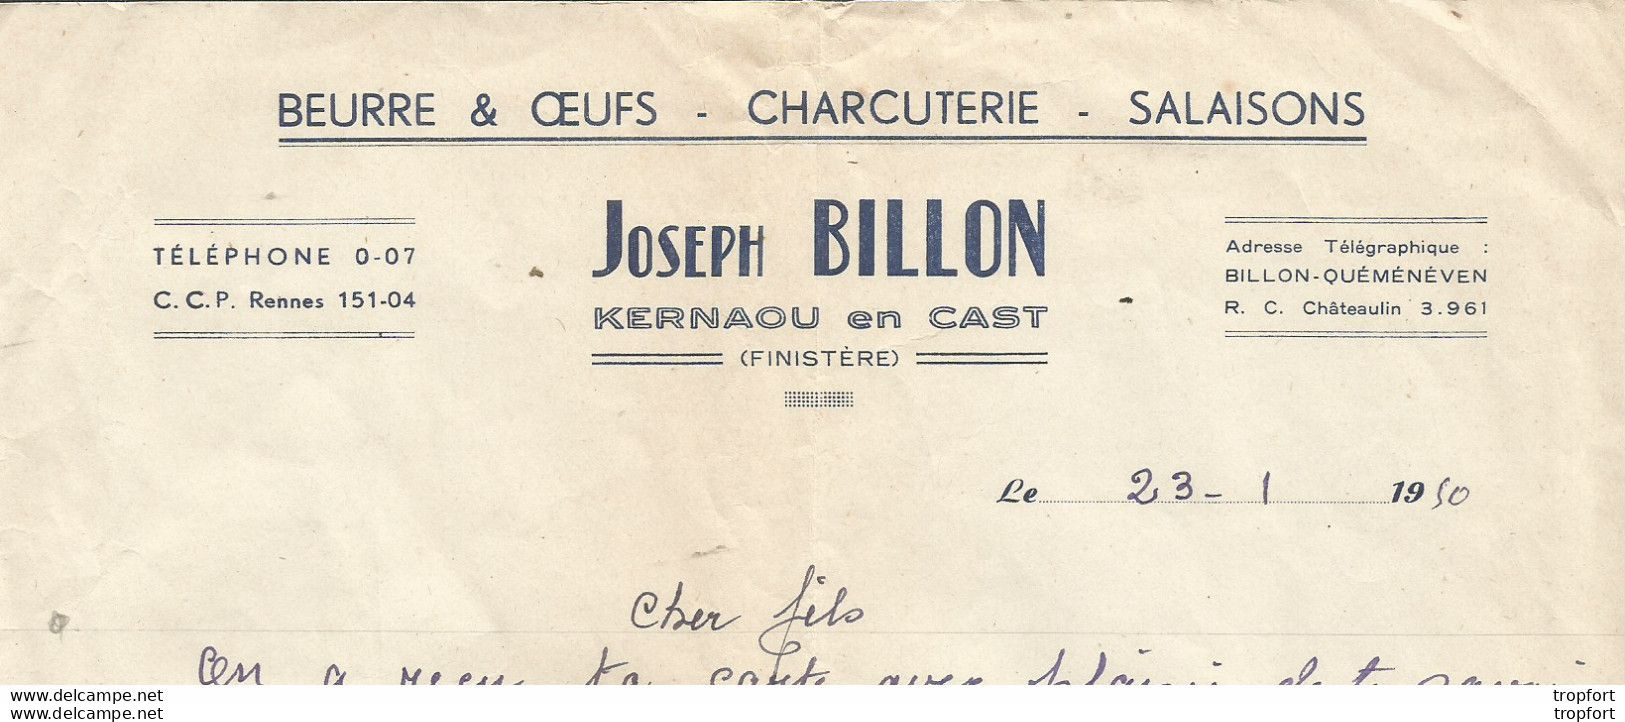 M12 Cpa / Old Invoice / Facture LETTRE Ancienne KERNAOU EN CAST 29 Joseph BILLON Charcuterie Beurre Salaisons 1950 - Alimentare